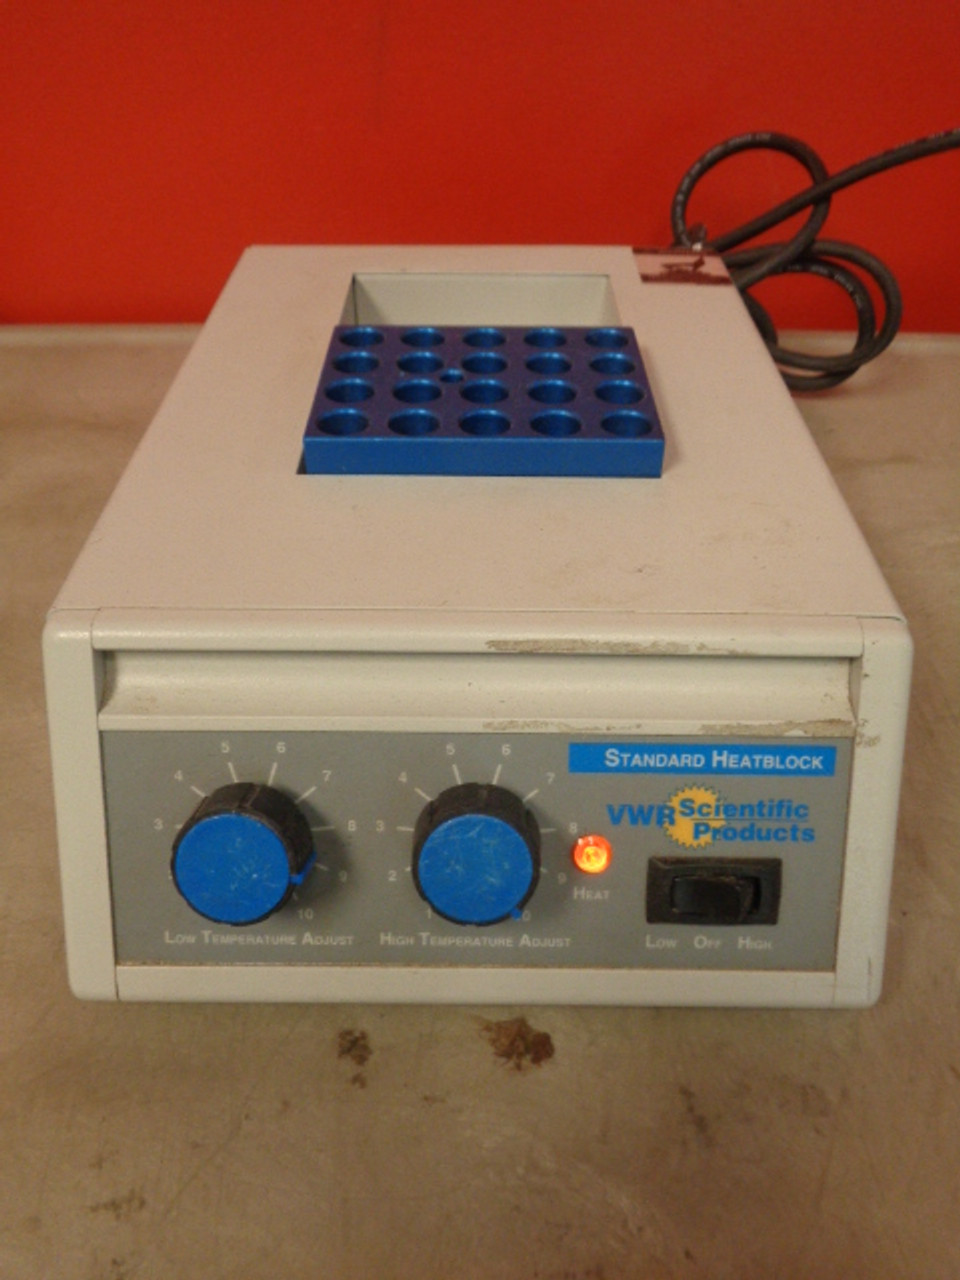 VWR Scientific Products Standard Heatblock II, Cat# 13259-032, 200 Watts